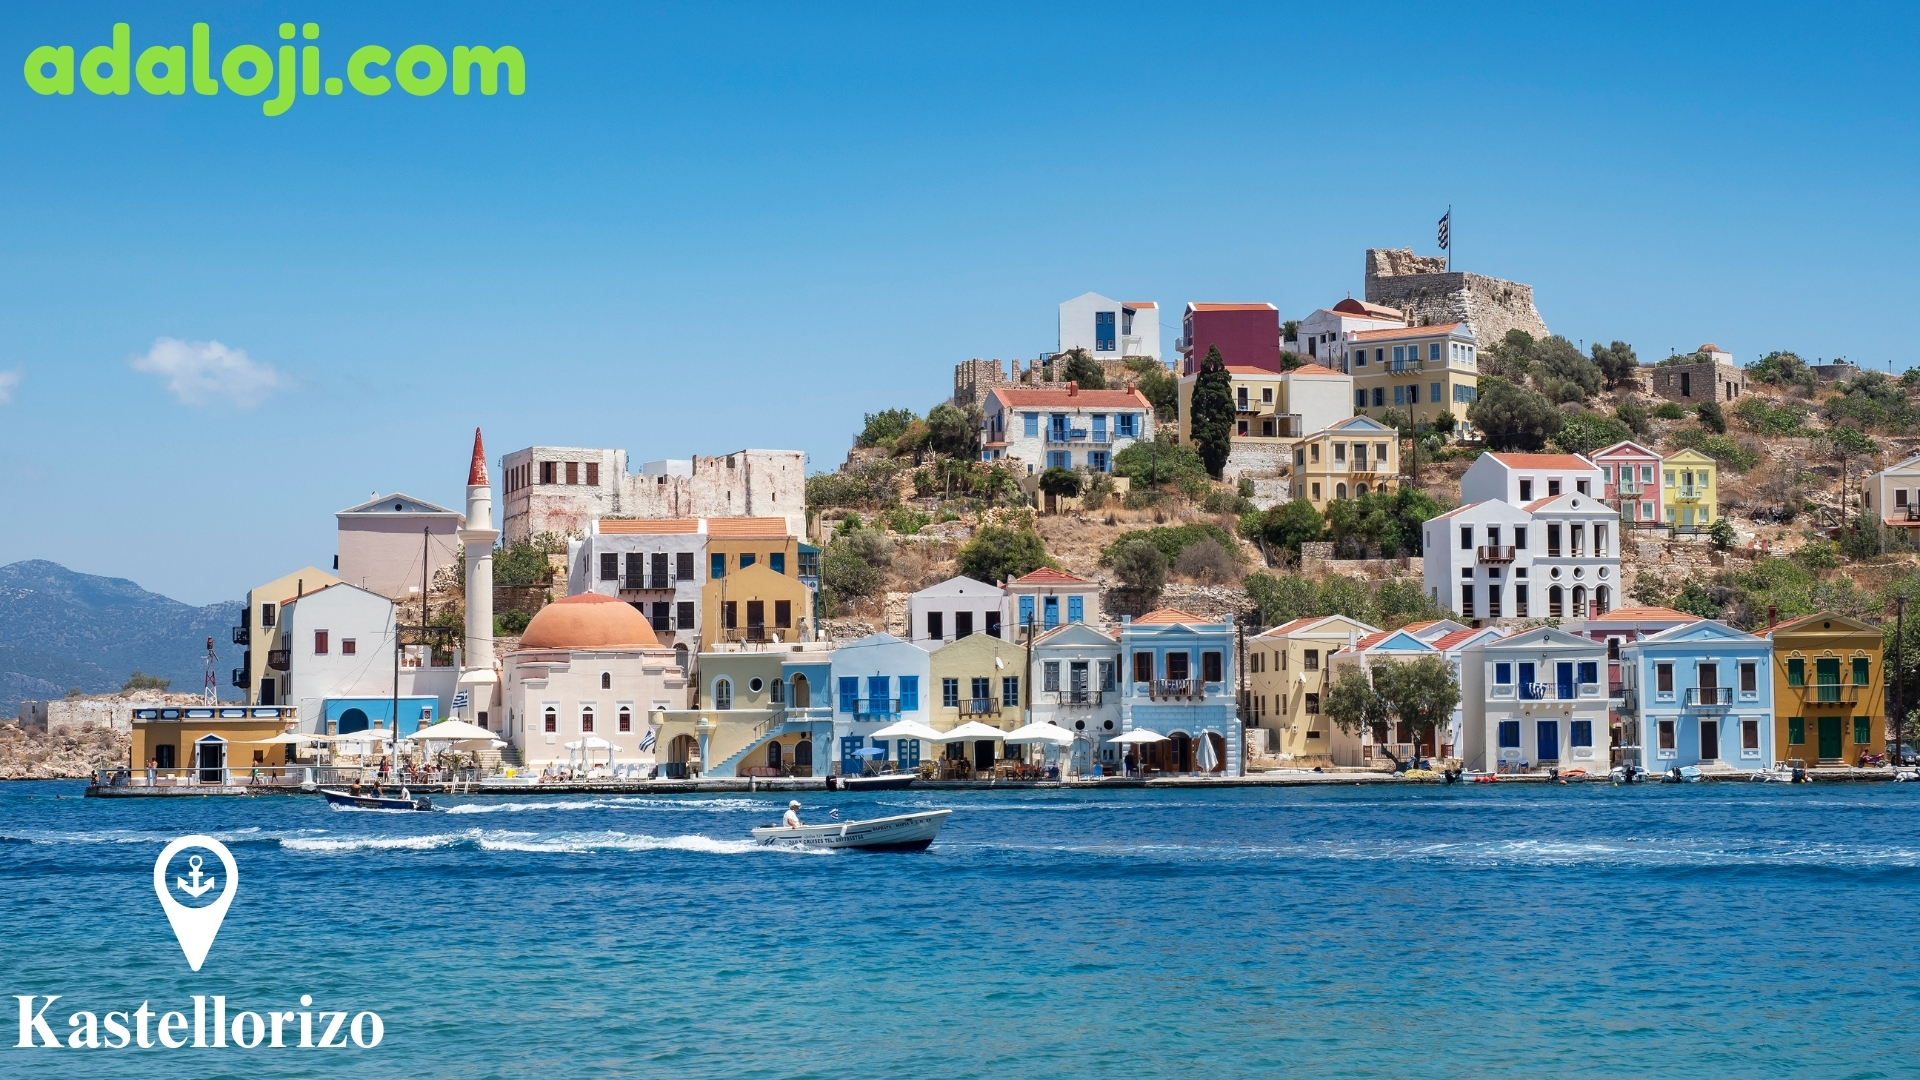 Kastellorizo - Your Gateway to the Aegean Sea.